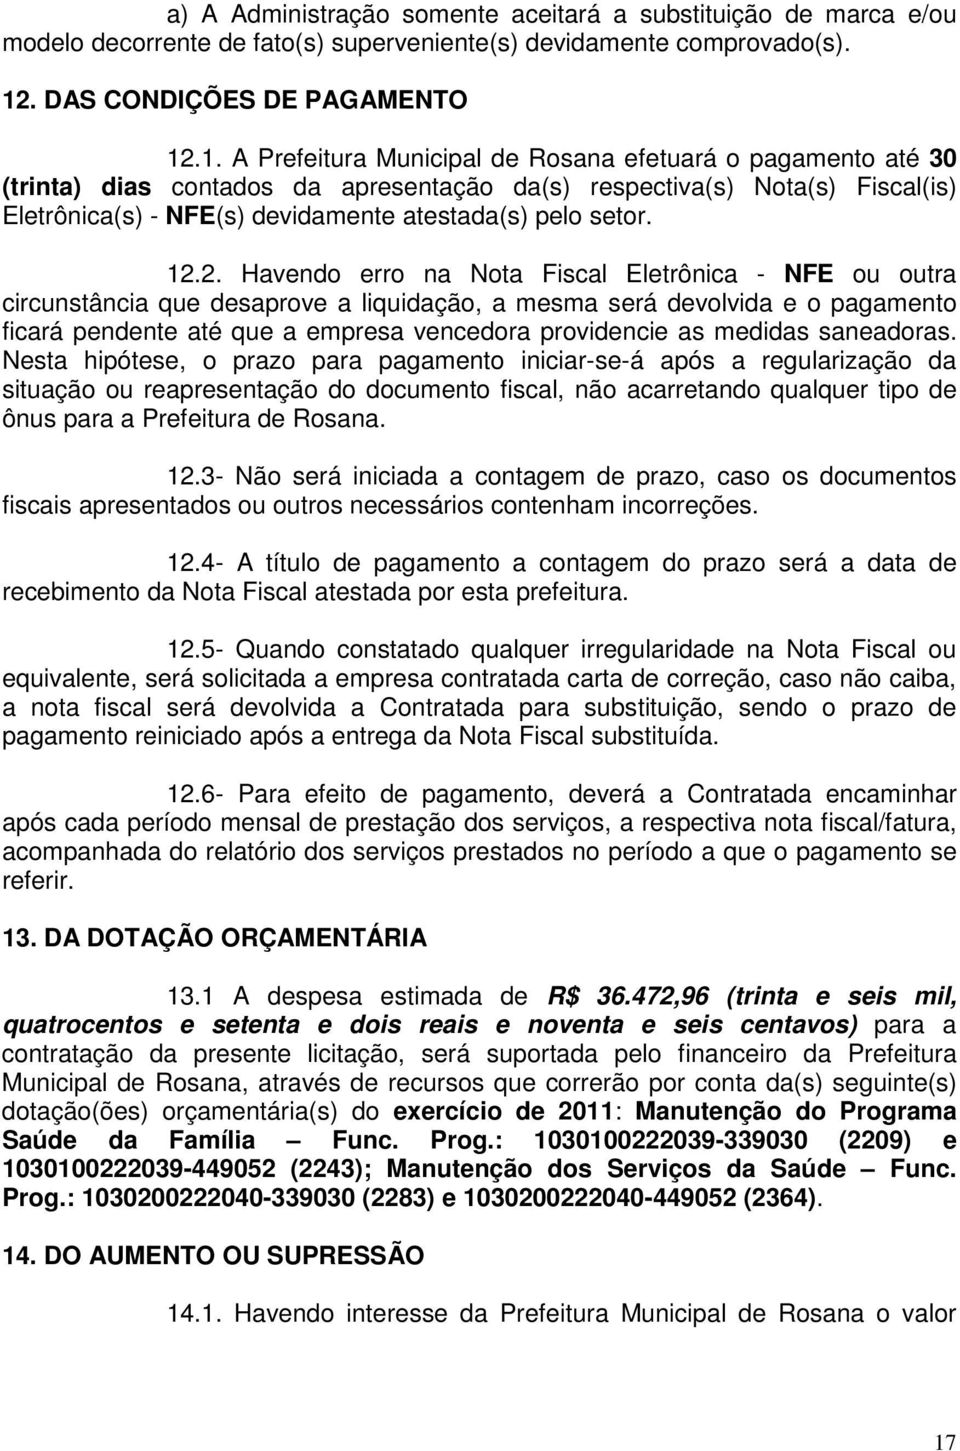 .1. A Prefeitura Municipal de Rosana efetuará o pagamento até 30 (trinta) dias contados da apresentação da(s) respectiva(s) Nota(s) Fiscal(is) Eletrônica(s) - NFE(s) devidamente atestada(s) pelo